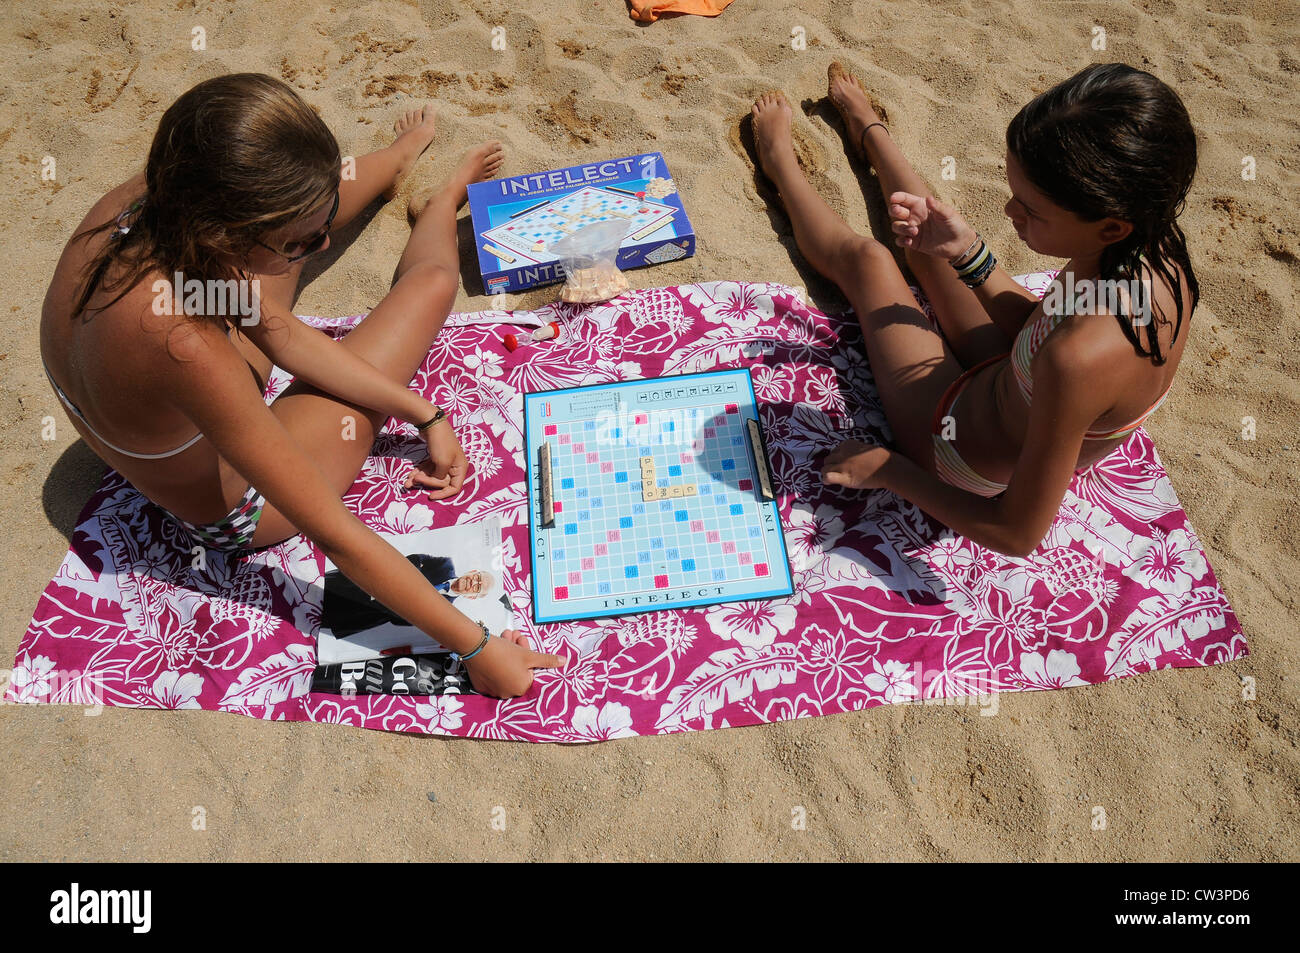 YOUNG GIRLS ON THE BEACH PLAYING INTELECT SANT FELIU DE GUIXOLS GIRONA CATALONIA SPAIN Stock Photo